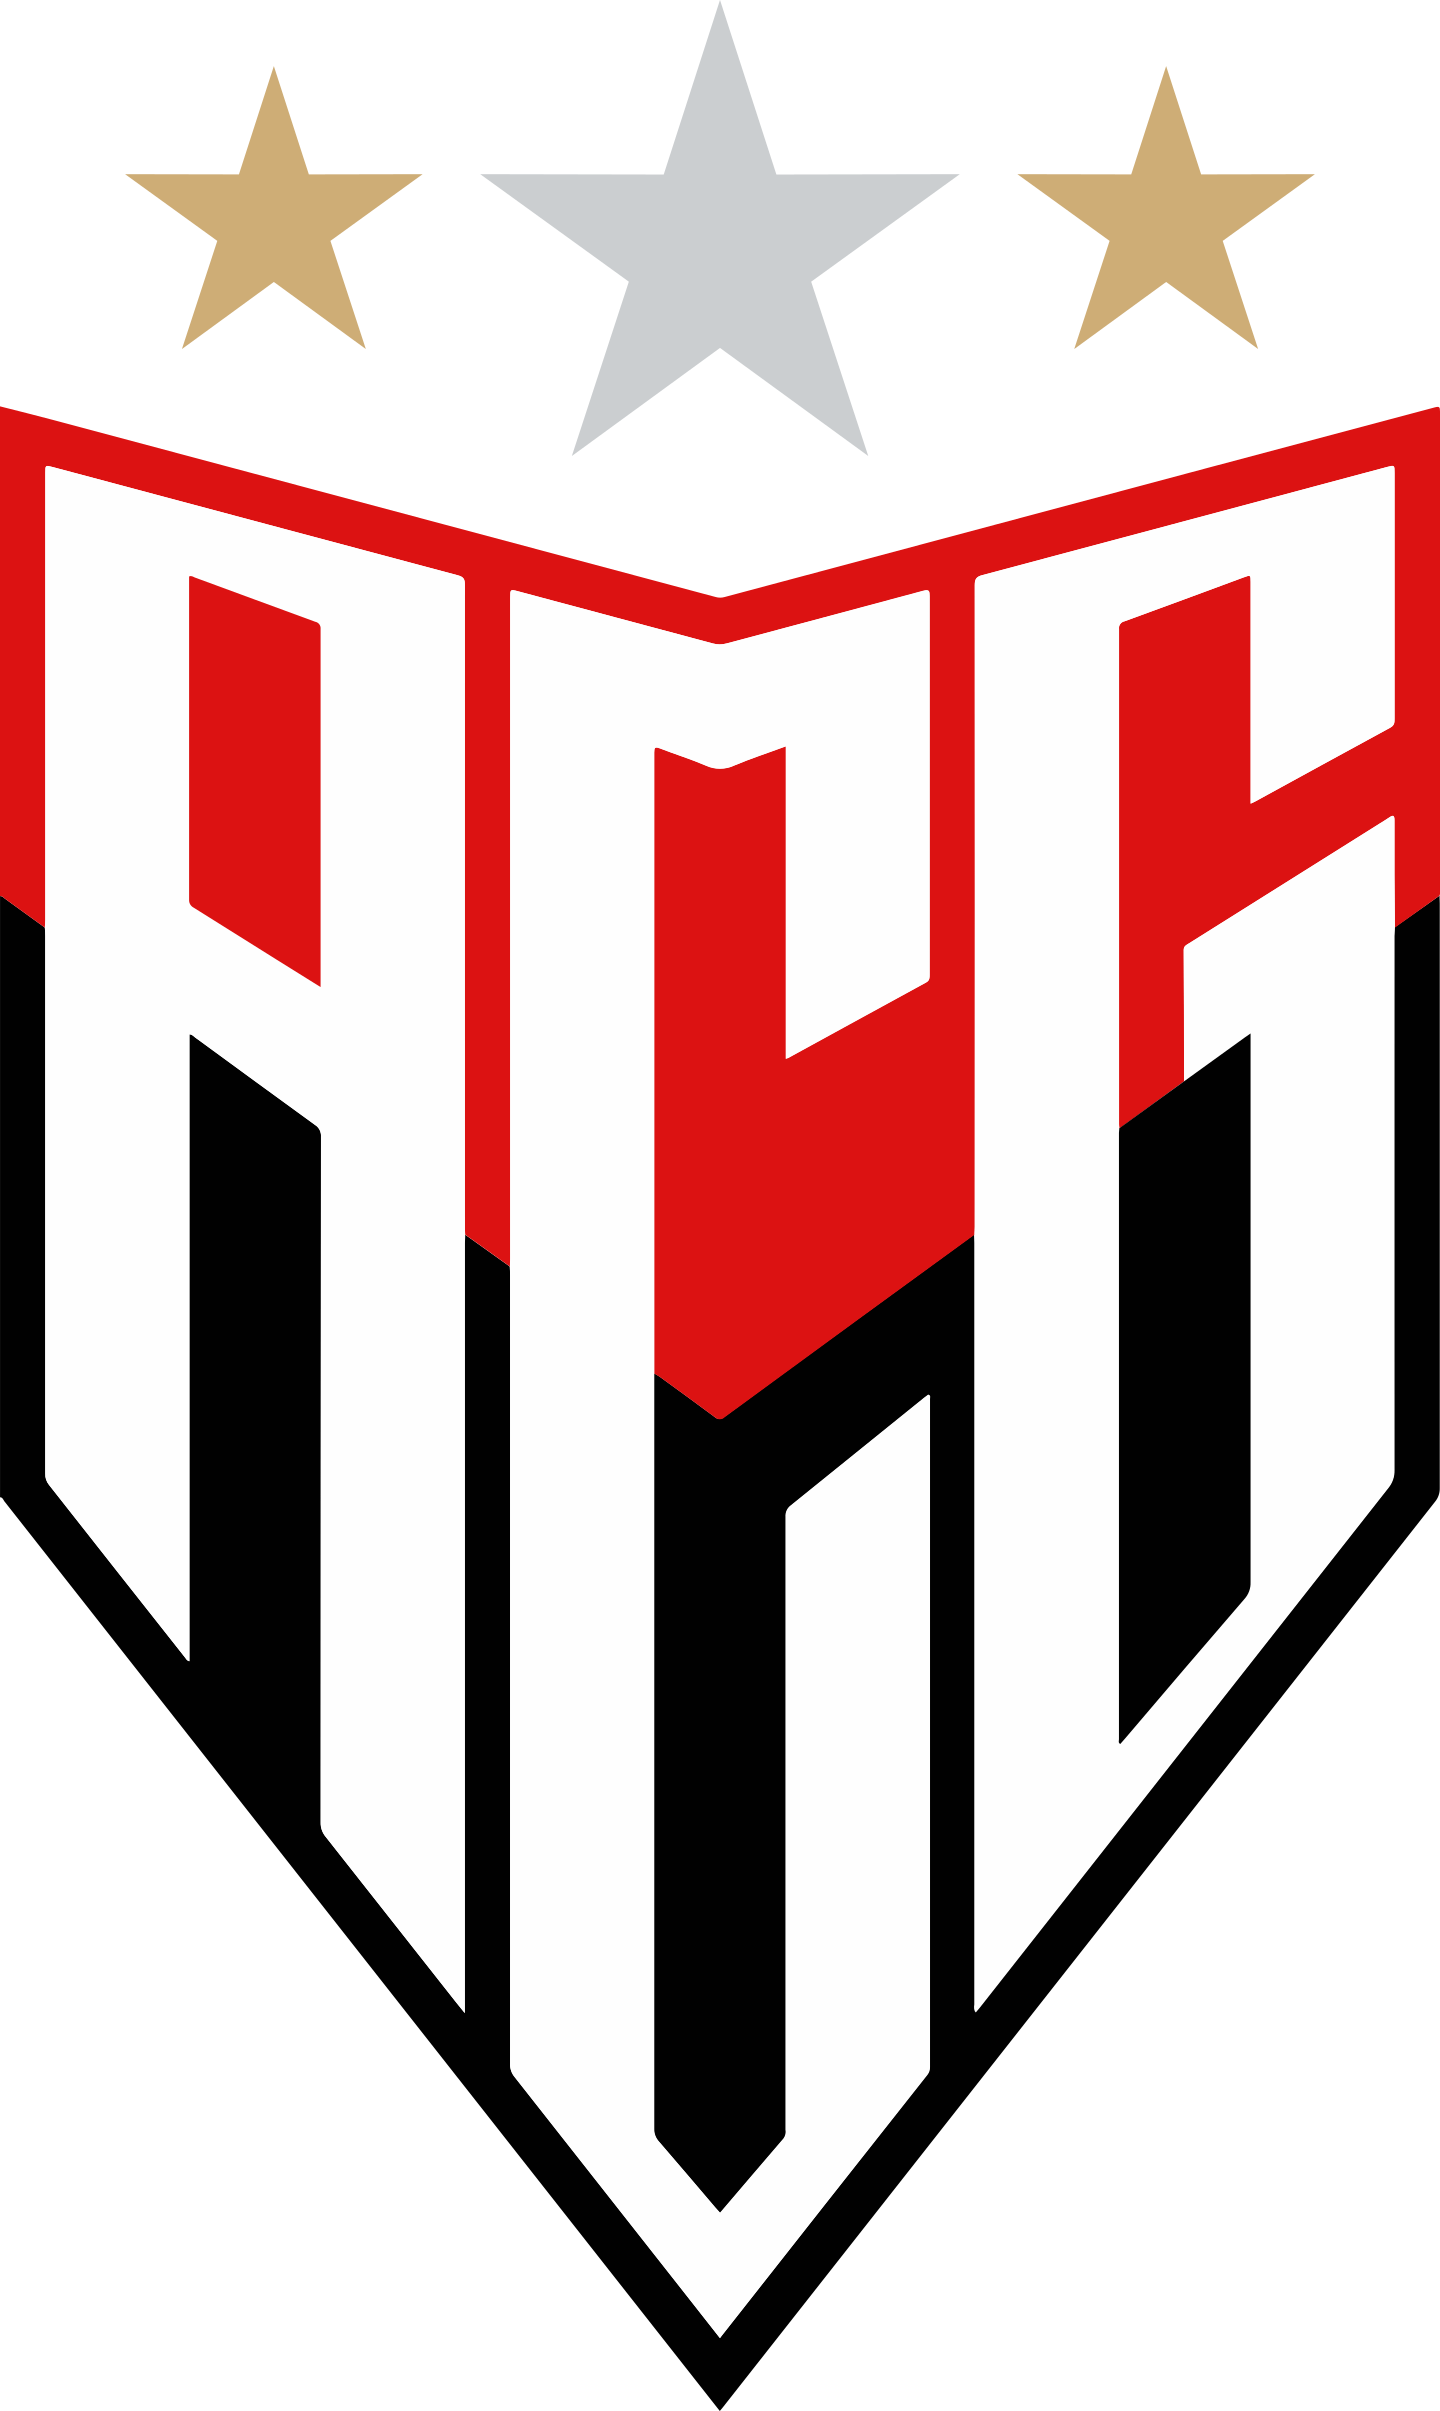 Crac enfrenta Atlético-GO fora de casa, em busca da primeira